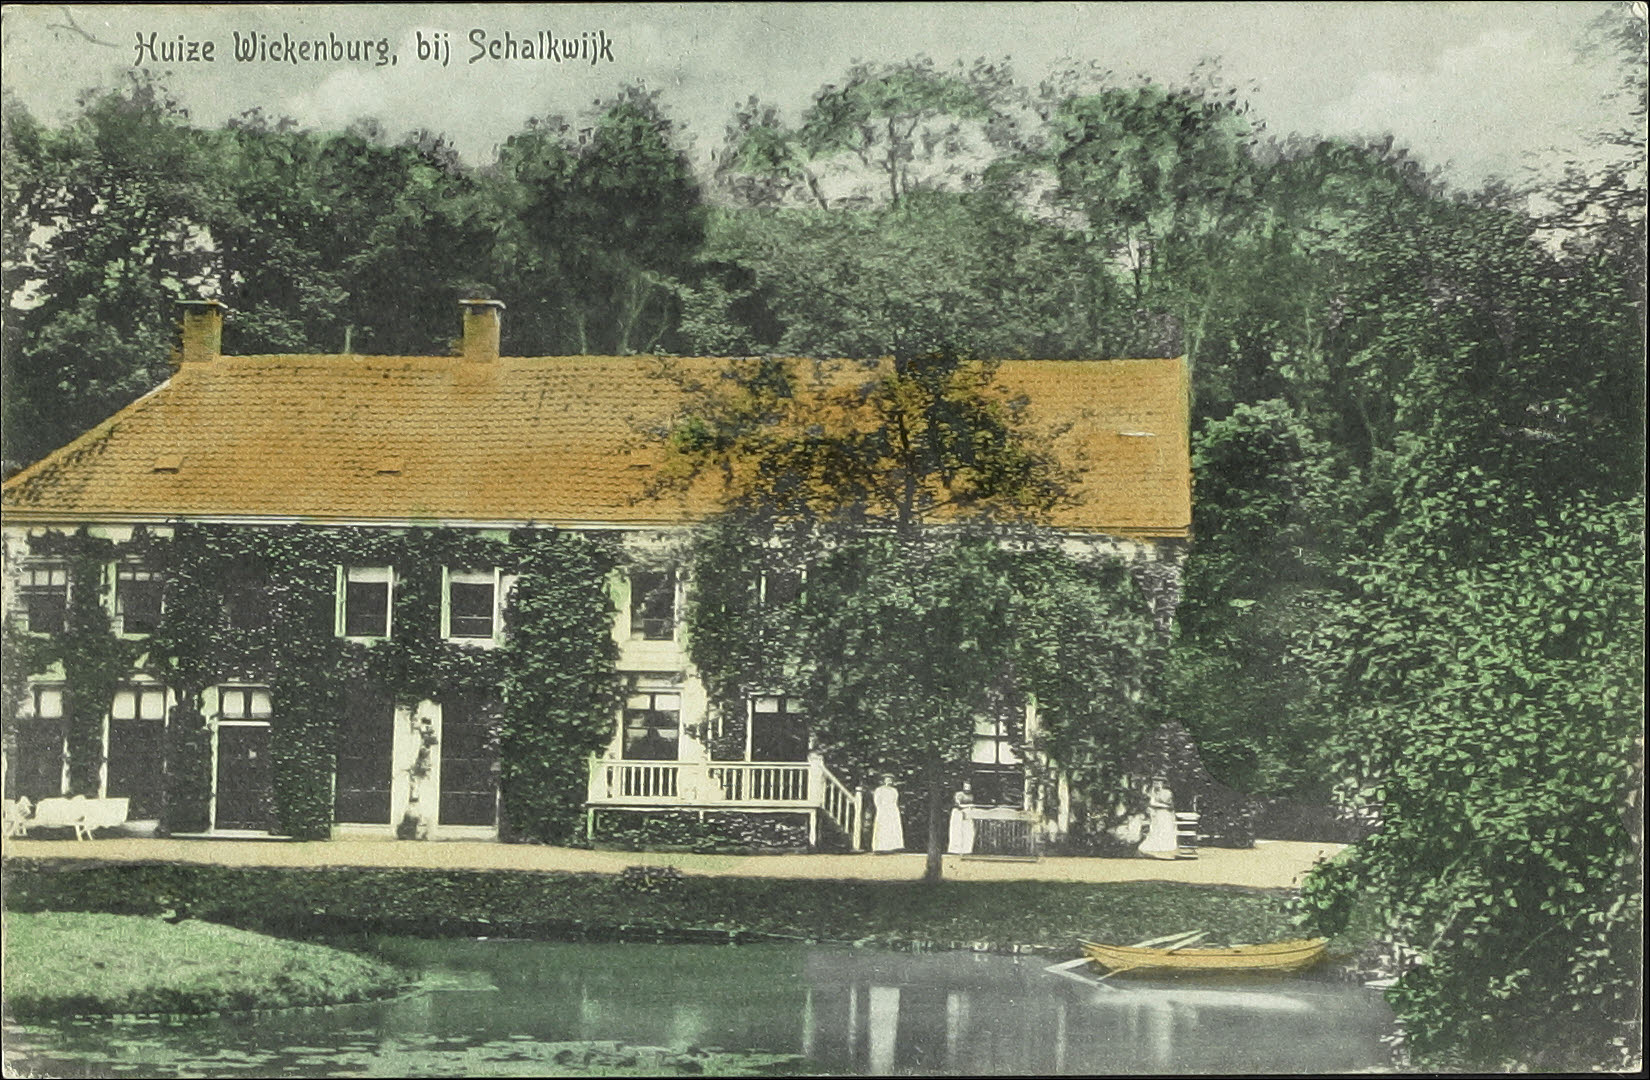 De voorgevel van het landhuis Wickenburgh, 1913. Cat.nr. 40006